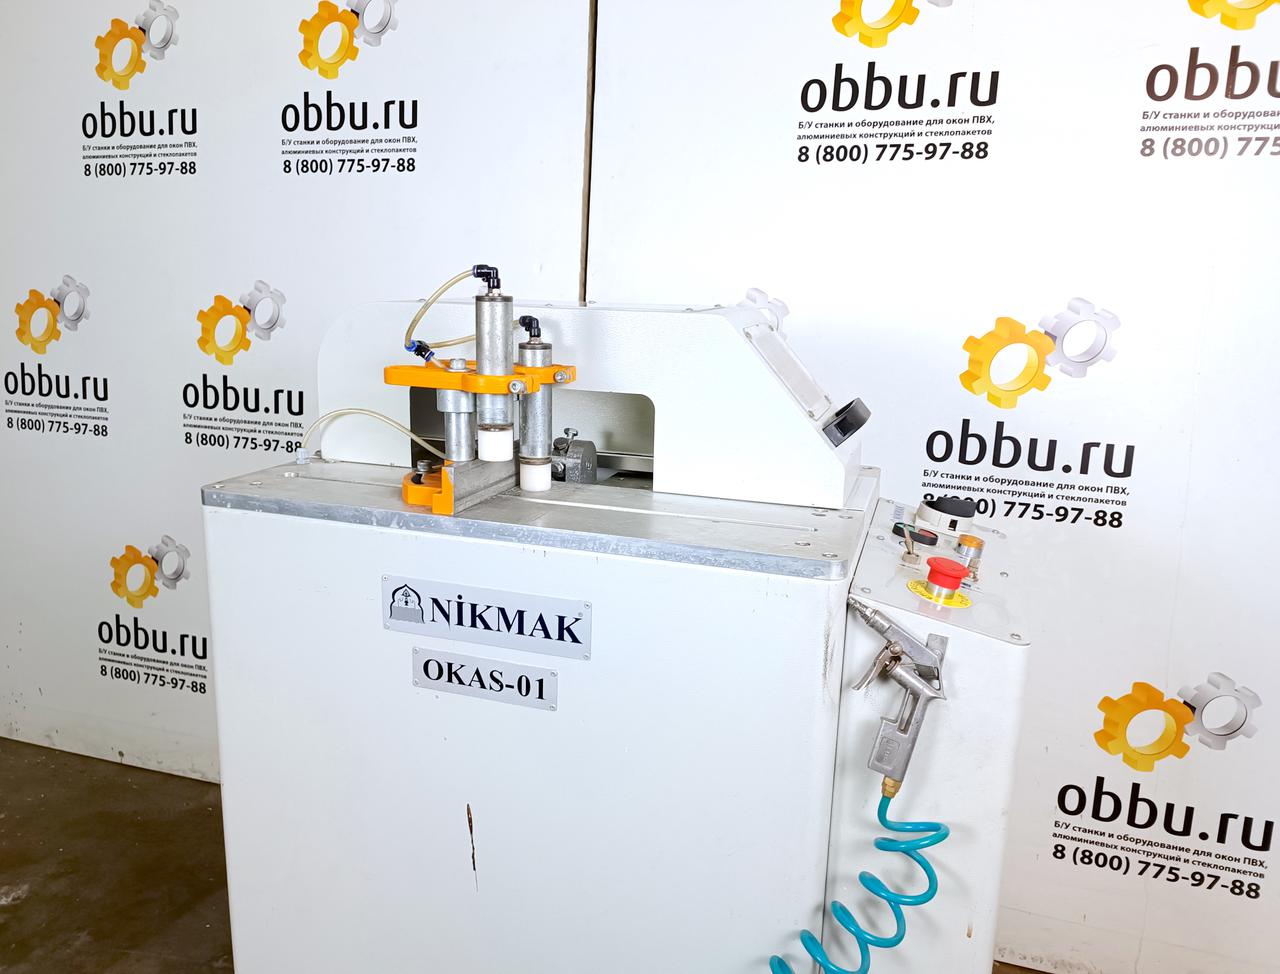 NIKMAK OKAS-01 Станок для обработки торцов импоста из ПВХ и алюминиевых профилей с системой быстрой смены фрезы (Б/У оборудование)